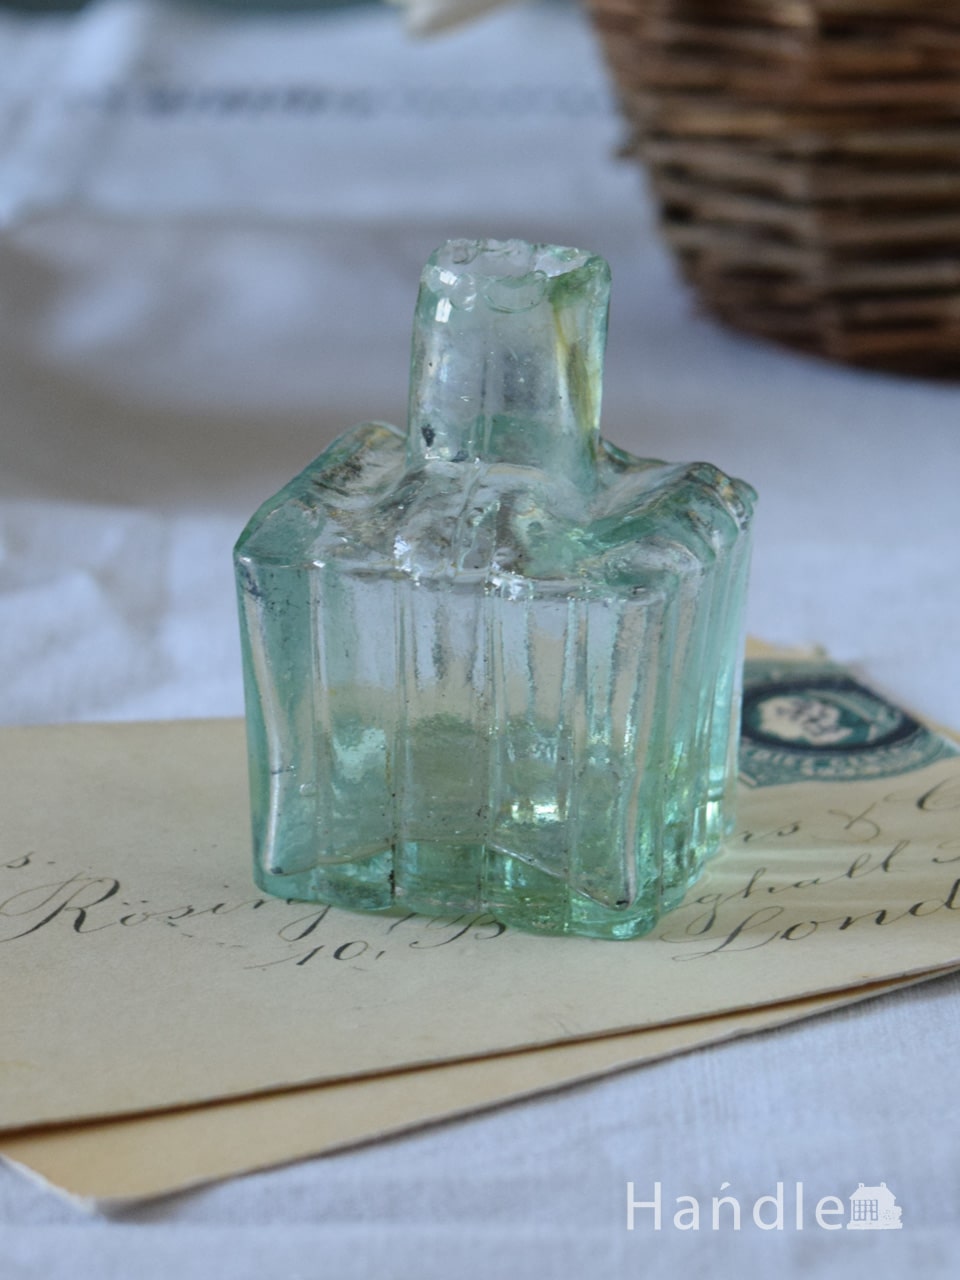 イギリスで見つけたアンティークのガラス雑貨、ペン置きタイプのヴィクトリアンインク瓶